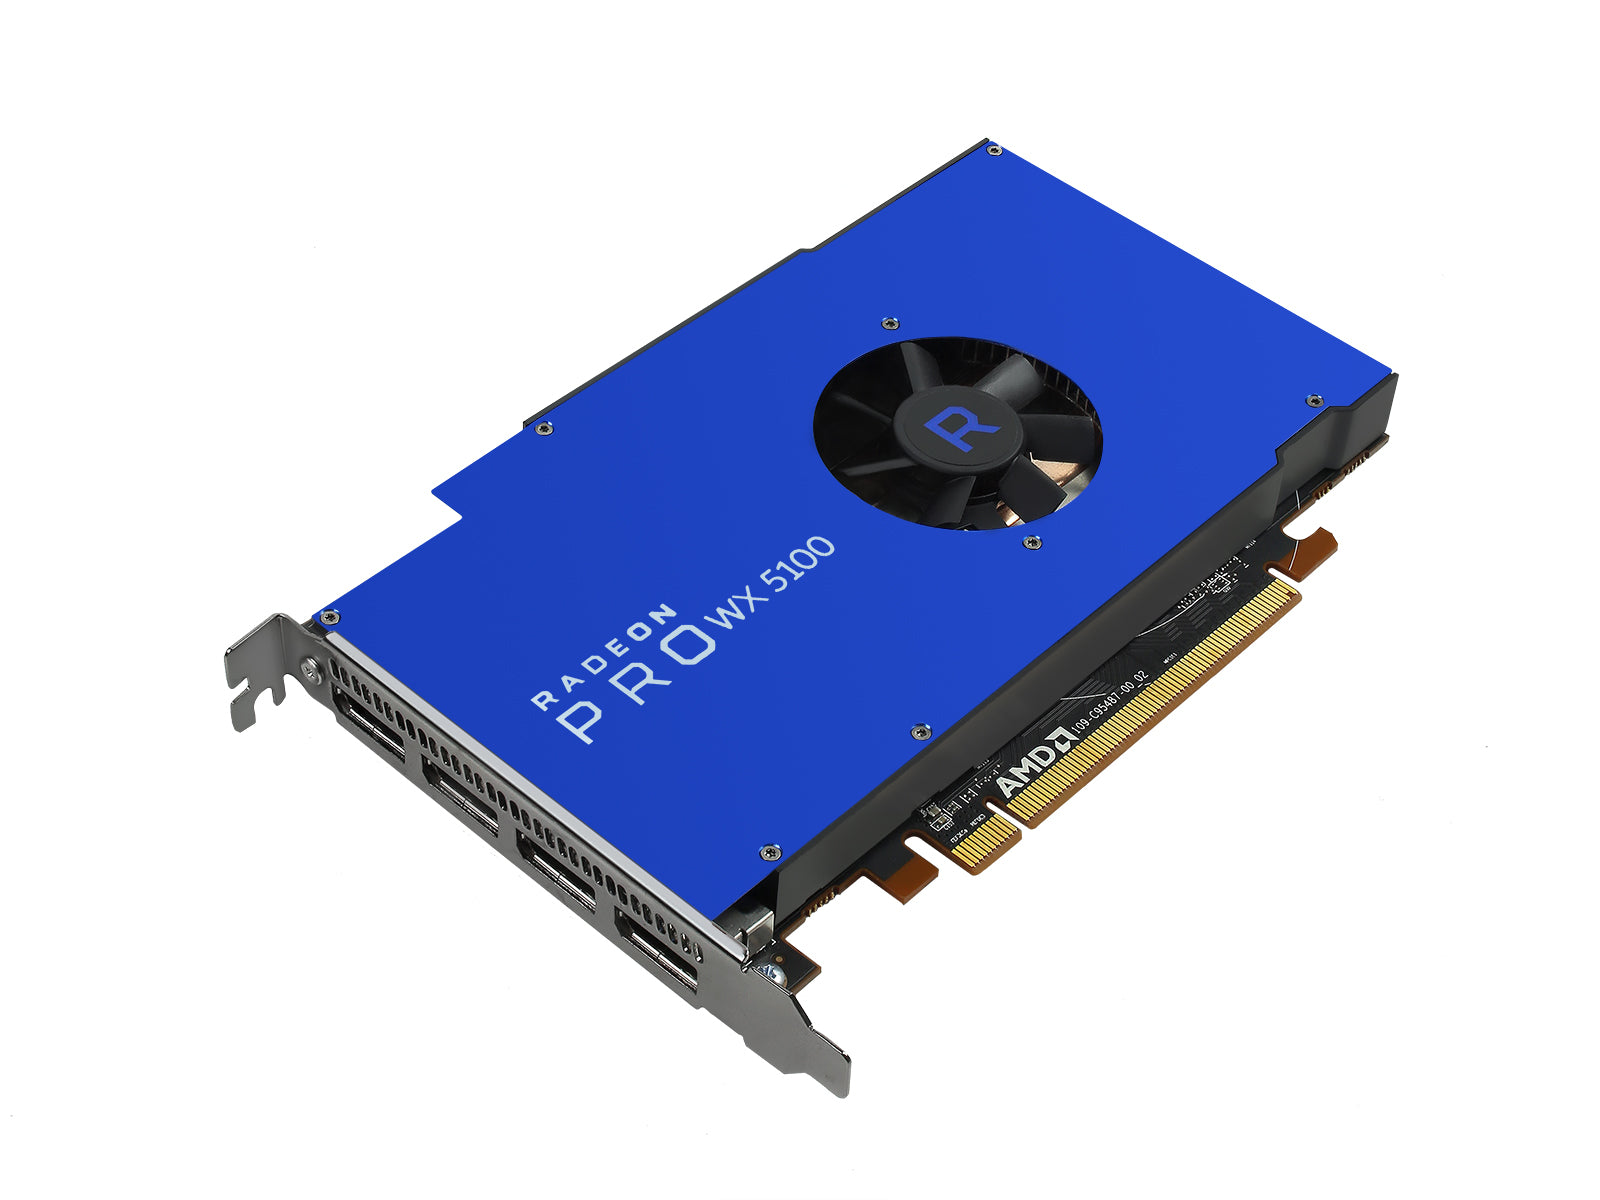 AMD Radeon Pro WX 5100 8GB グラフィックス カード Monitors.com